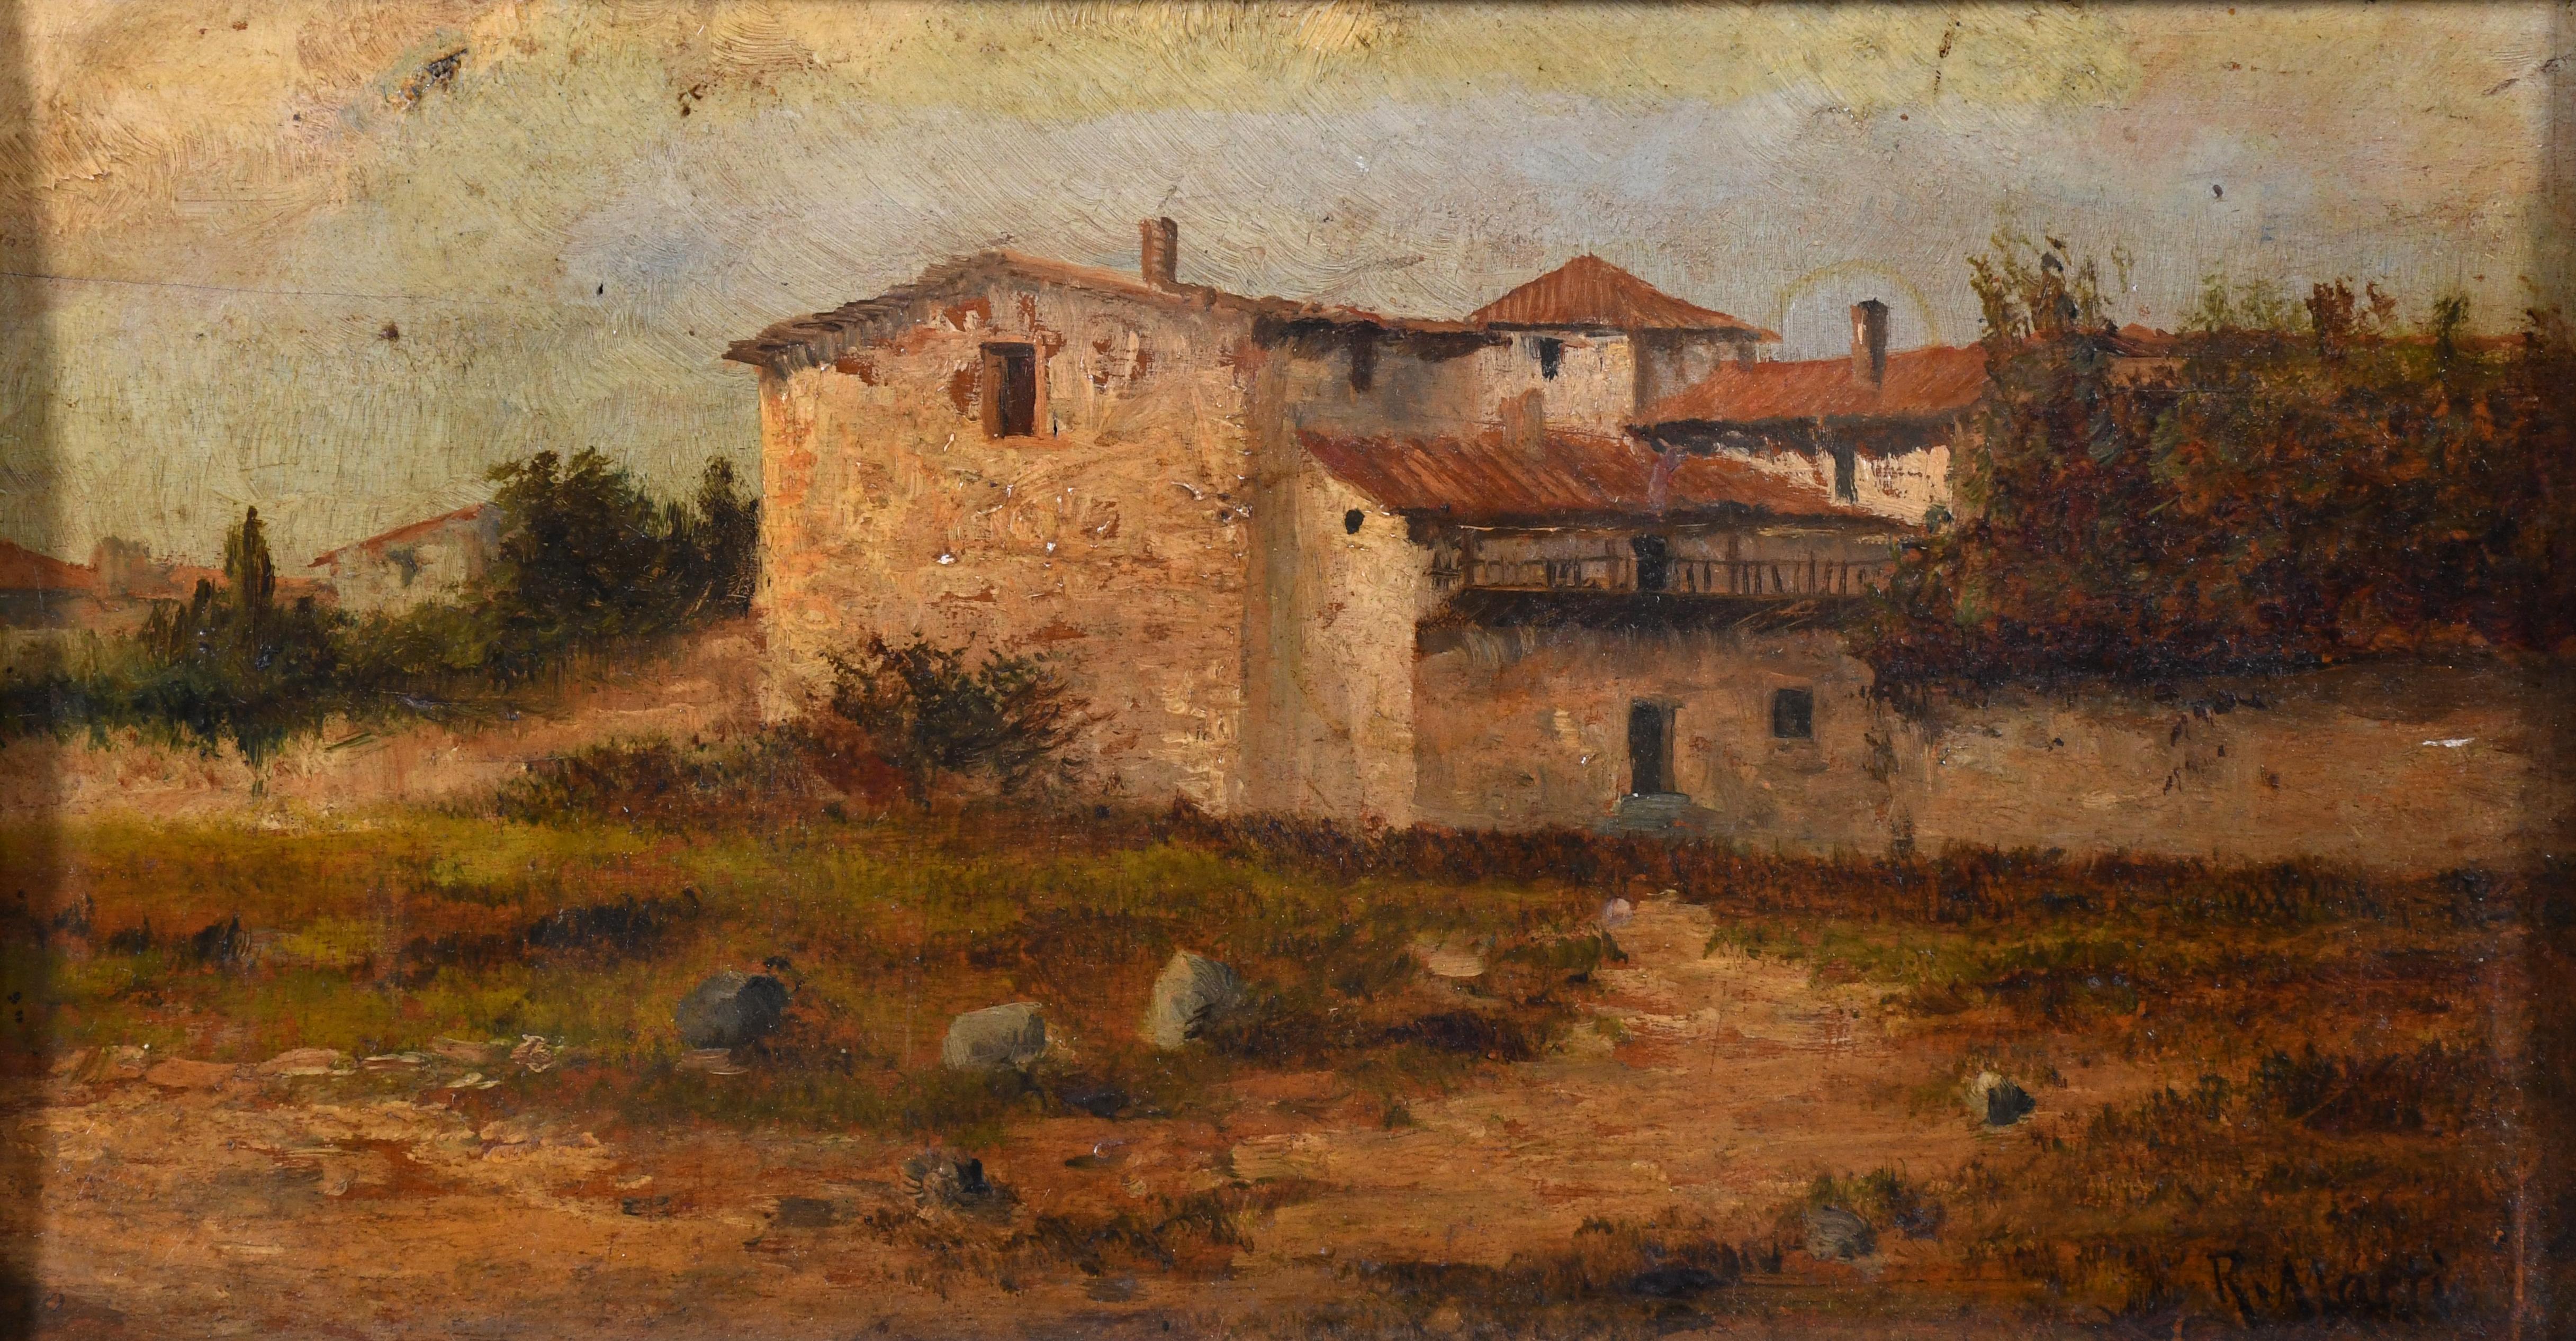 RAMÓN MARTÍ ALSINA (1826-1894). "CASAS".